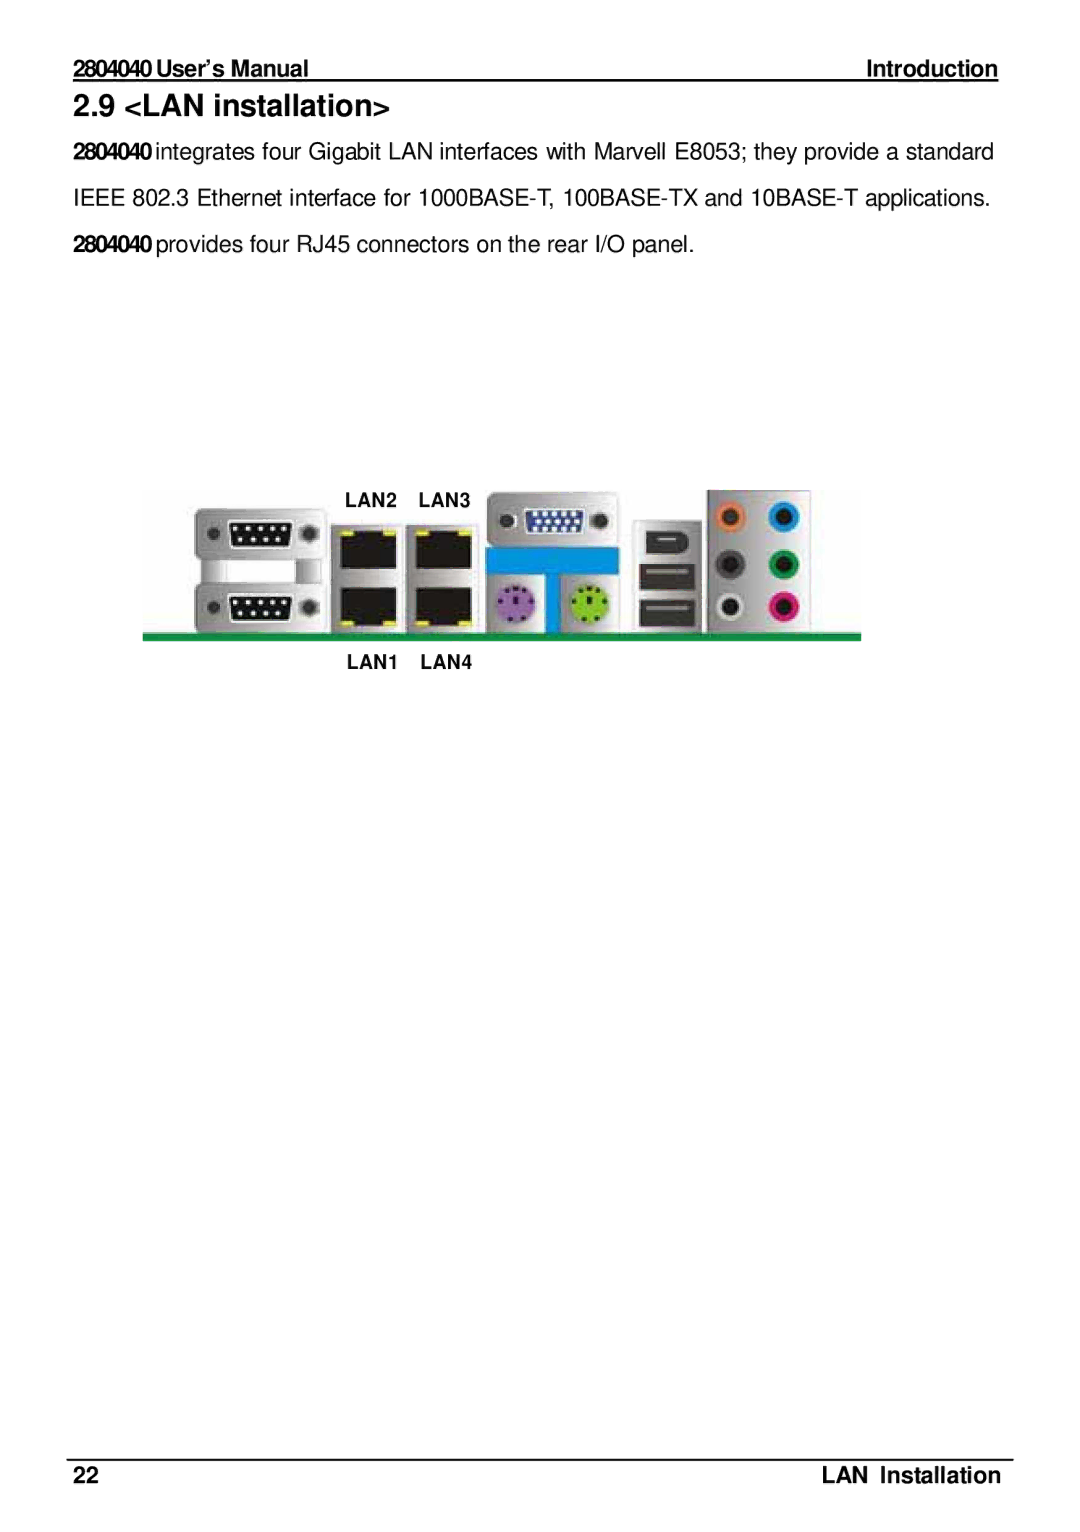 Intel 2804040 user manual LAN installation, LAN Installation 